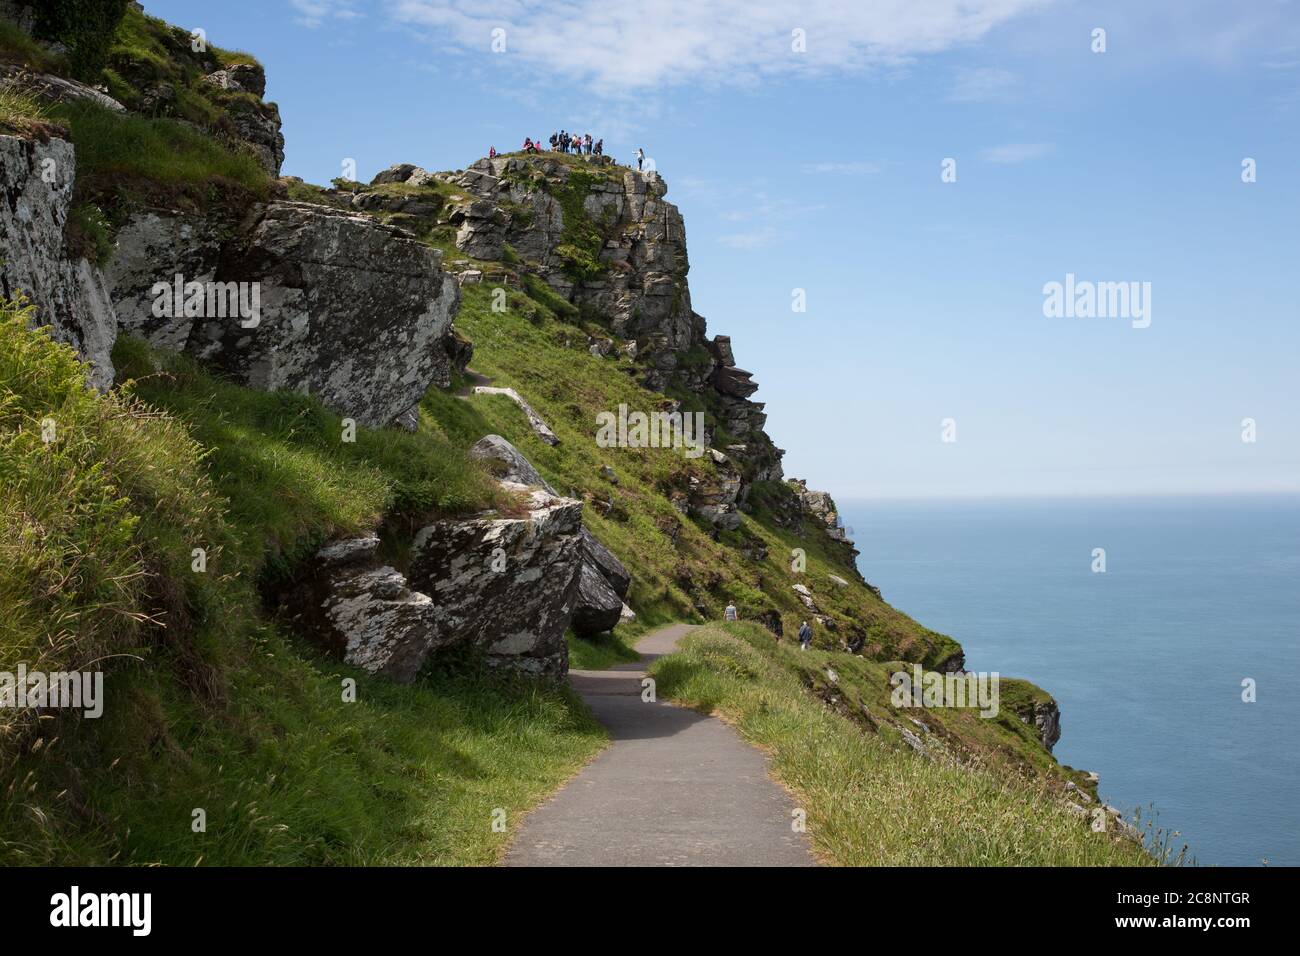 Sentier côtier de la falaise Valley of Rocks près de Lynton Devon, Royaume-Uni Banque D'Images